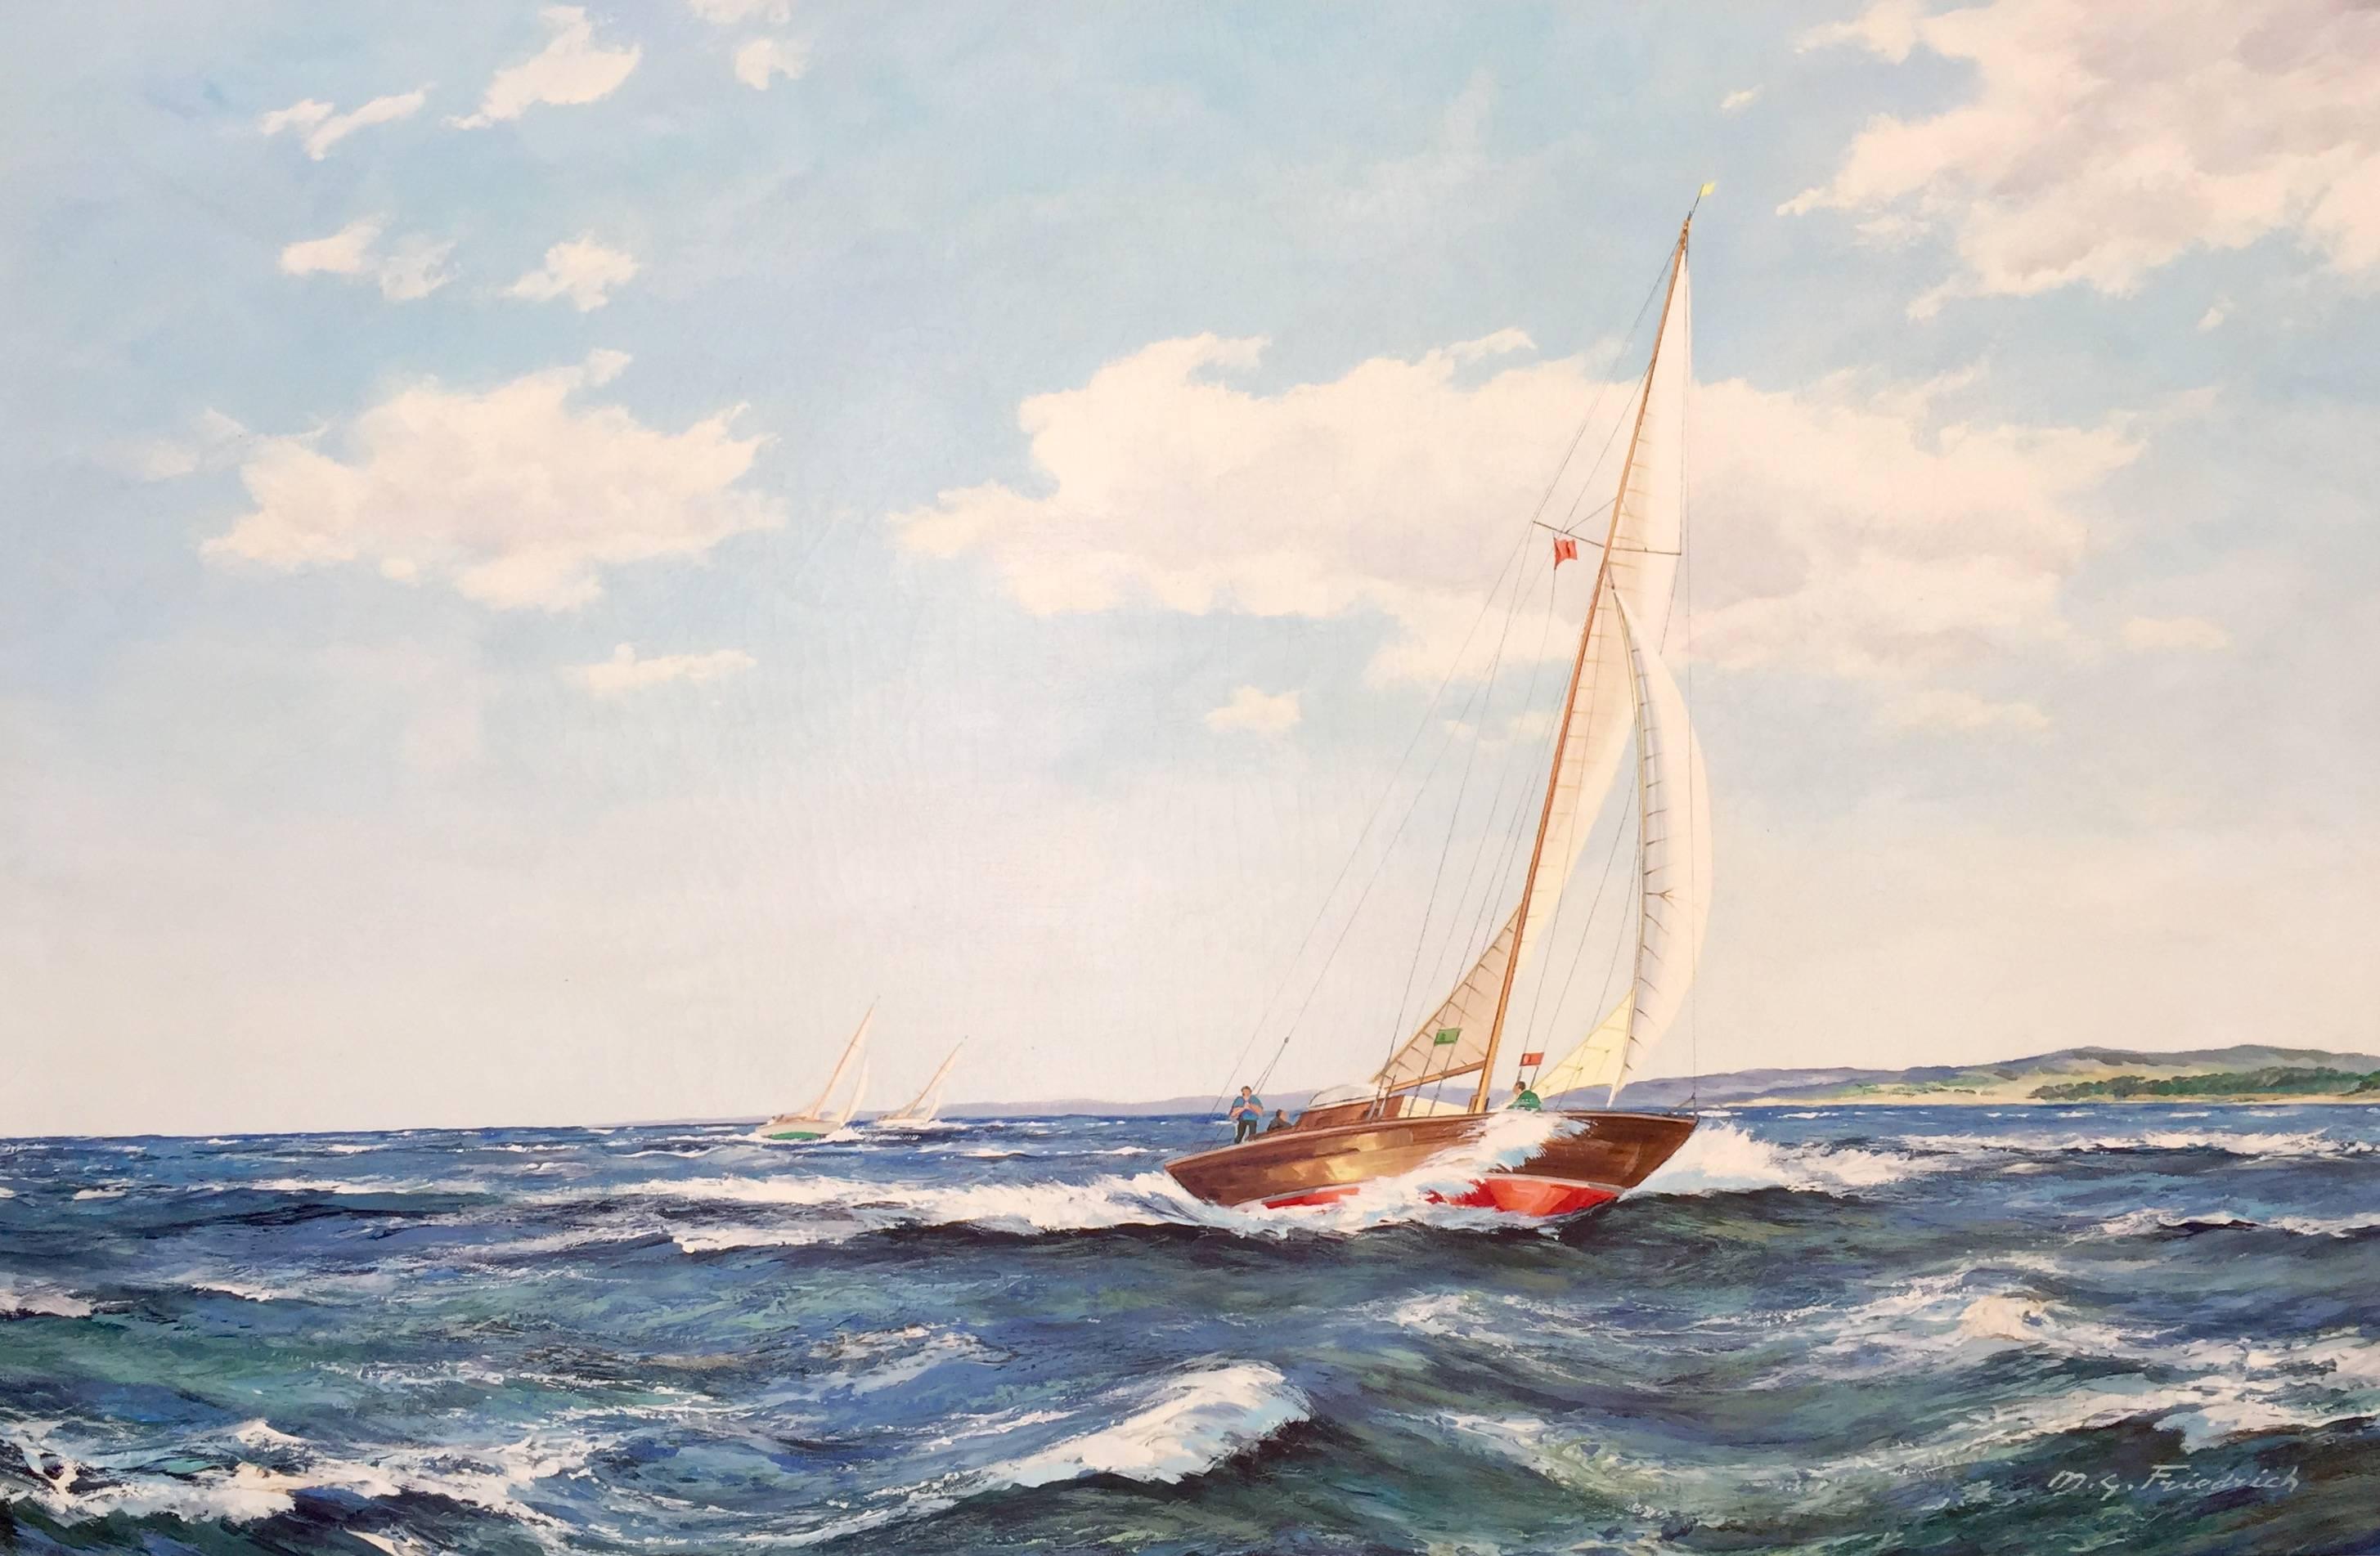 M.G. Friedrich Landscape Painting - "Sailing"